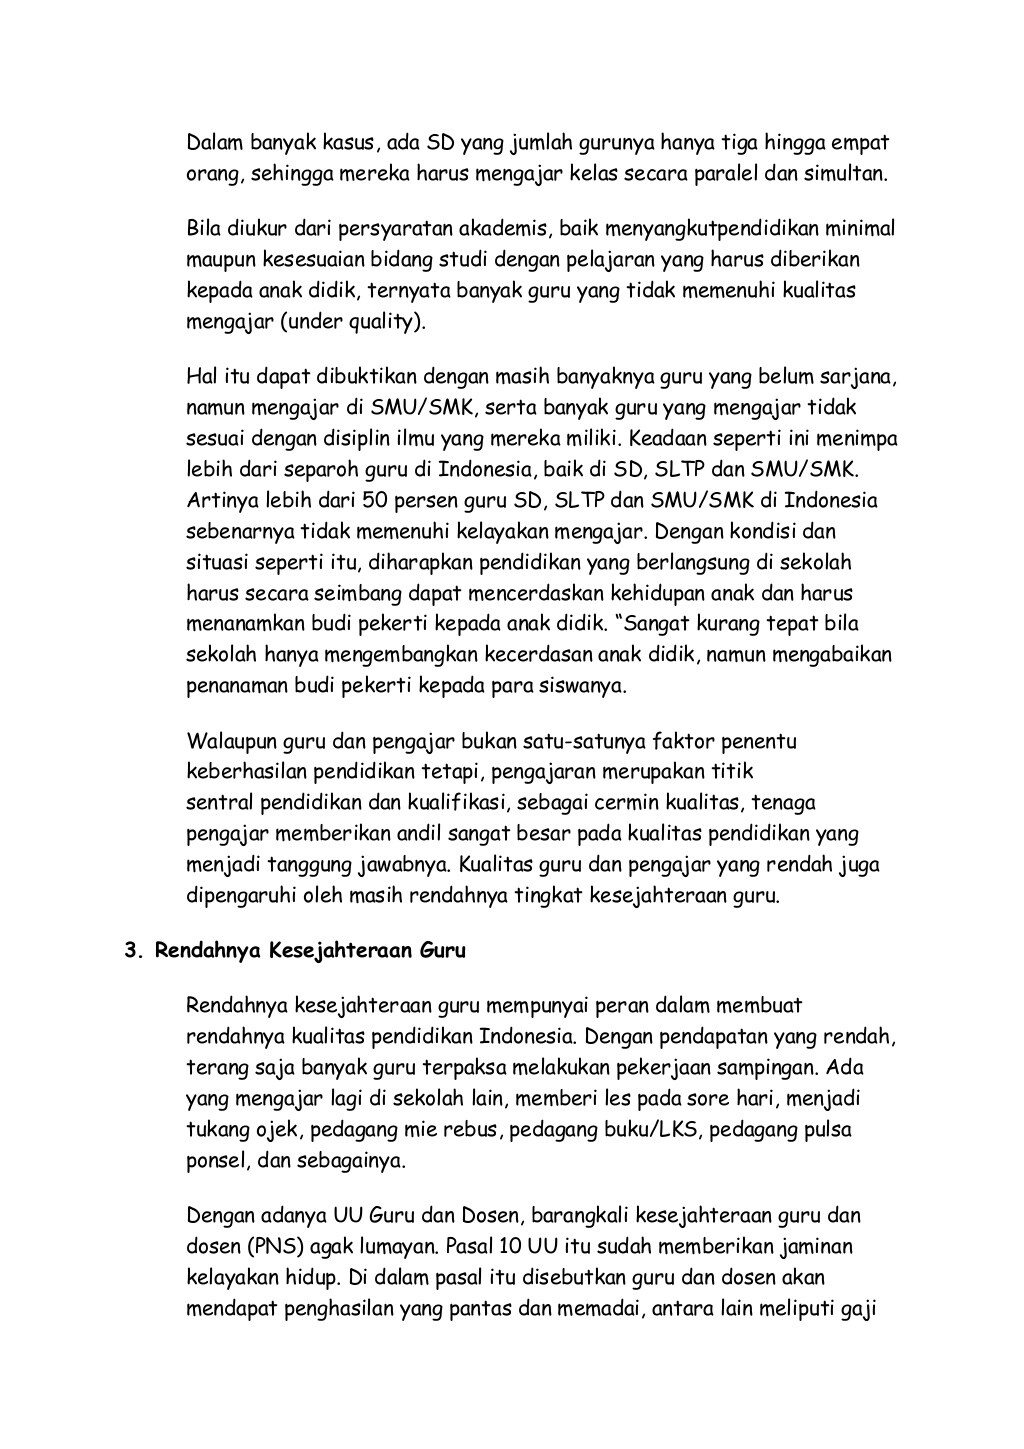 makalah tentang pendidikan di indonesia